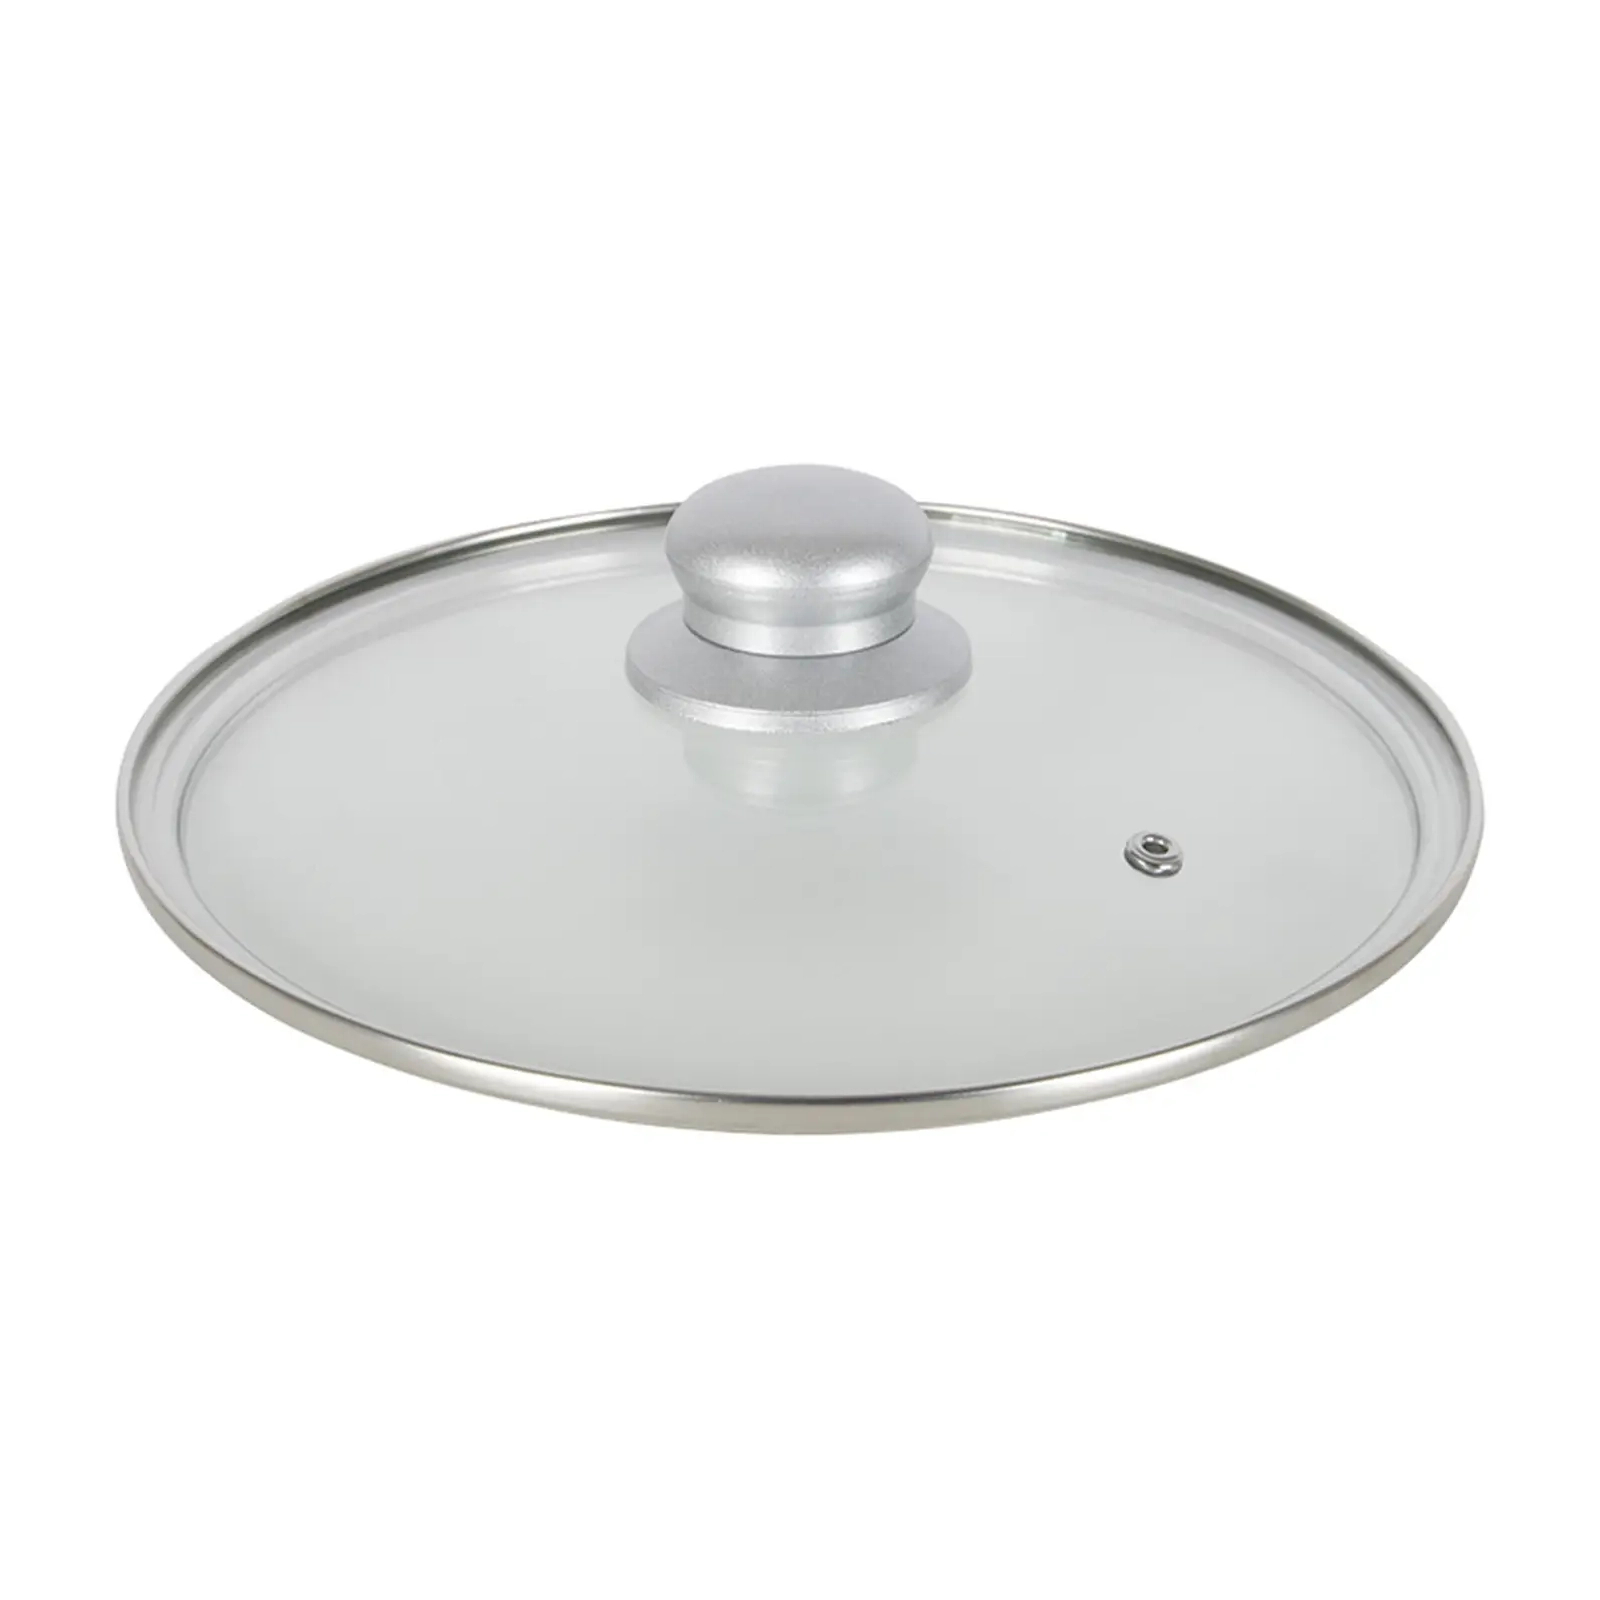 Набор посуды Gimex Cookware Set induction 8 предметів Silver (6977227) изображение 9